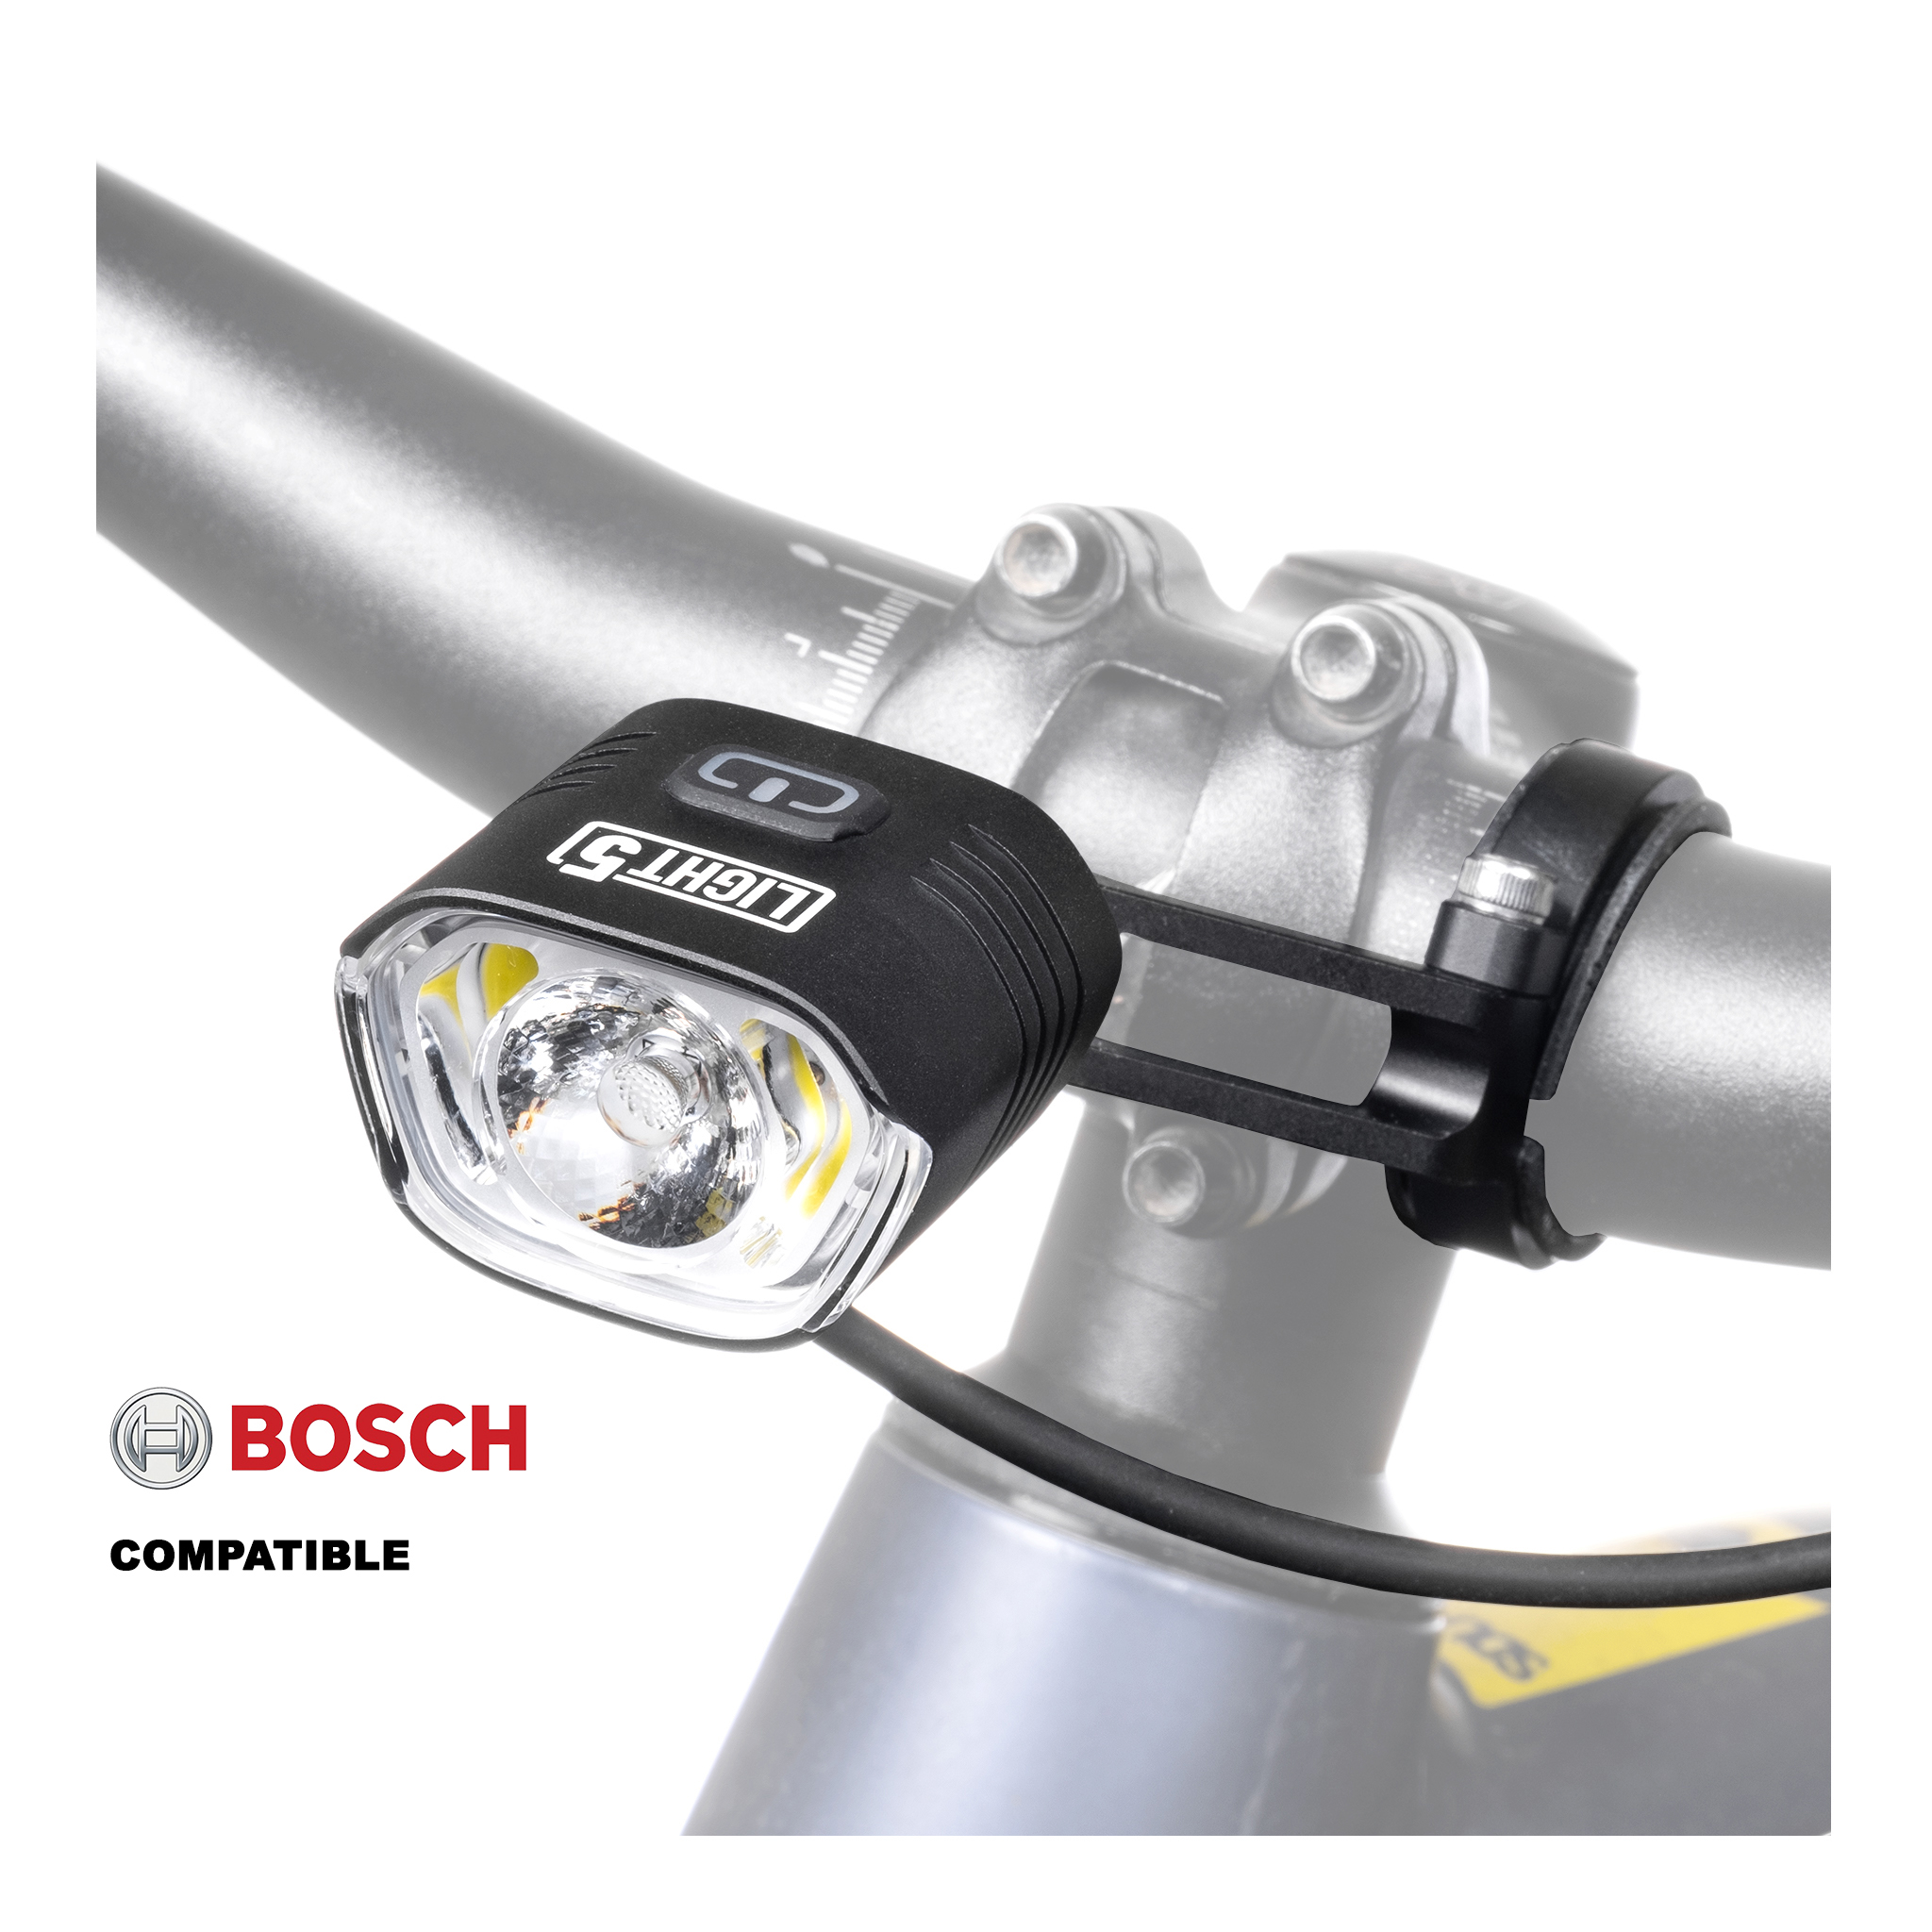 Cykellampa för elcykel Light5 EB1000 Bosch, 1000 lm, Bosch